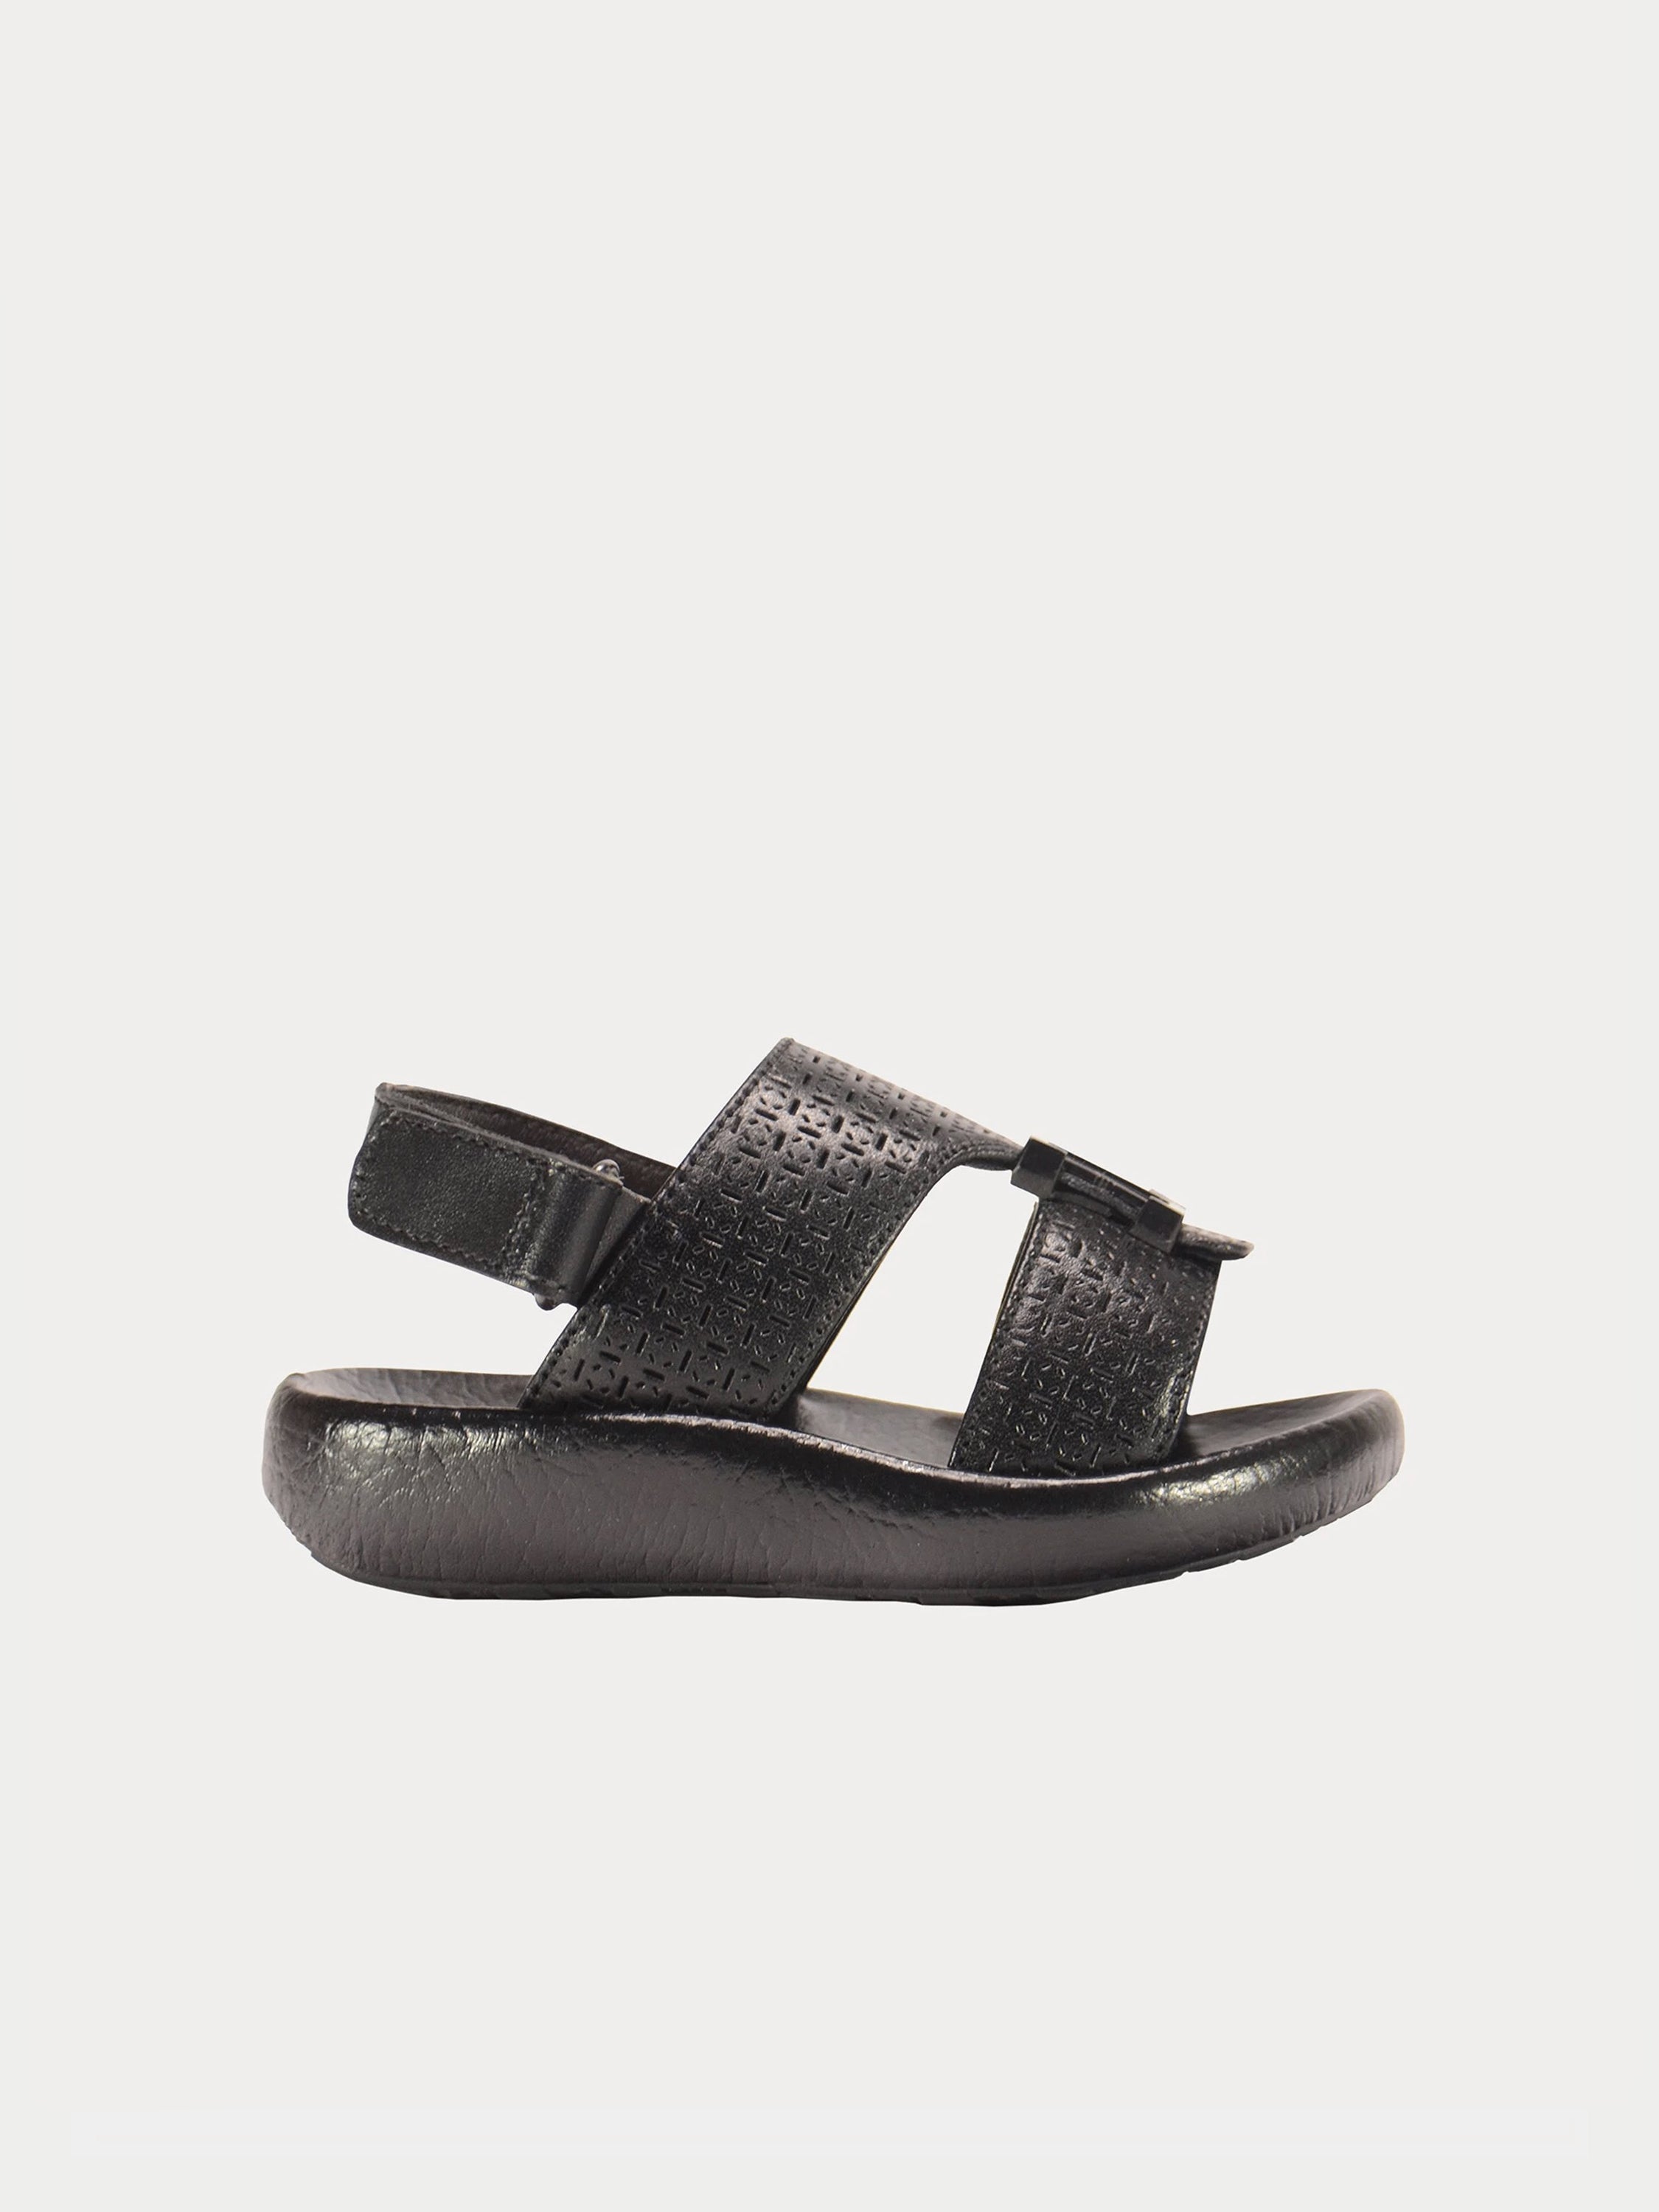 Barjeel Uno 2190940 Boys Arabic Sandals #color_Black